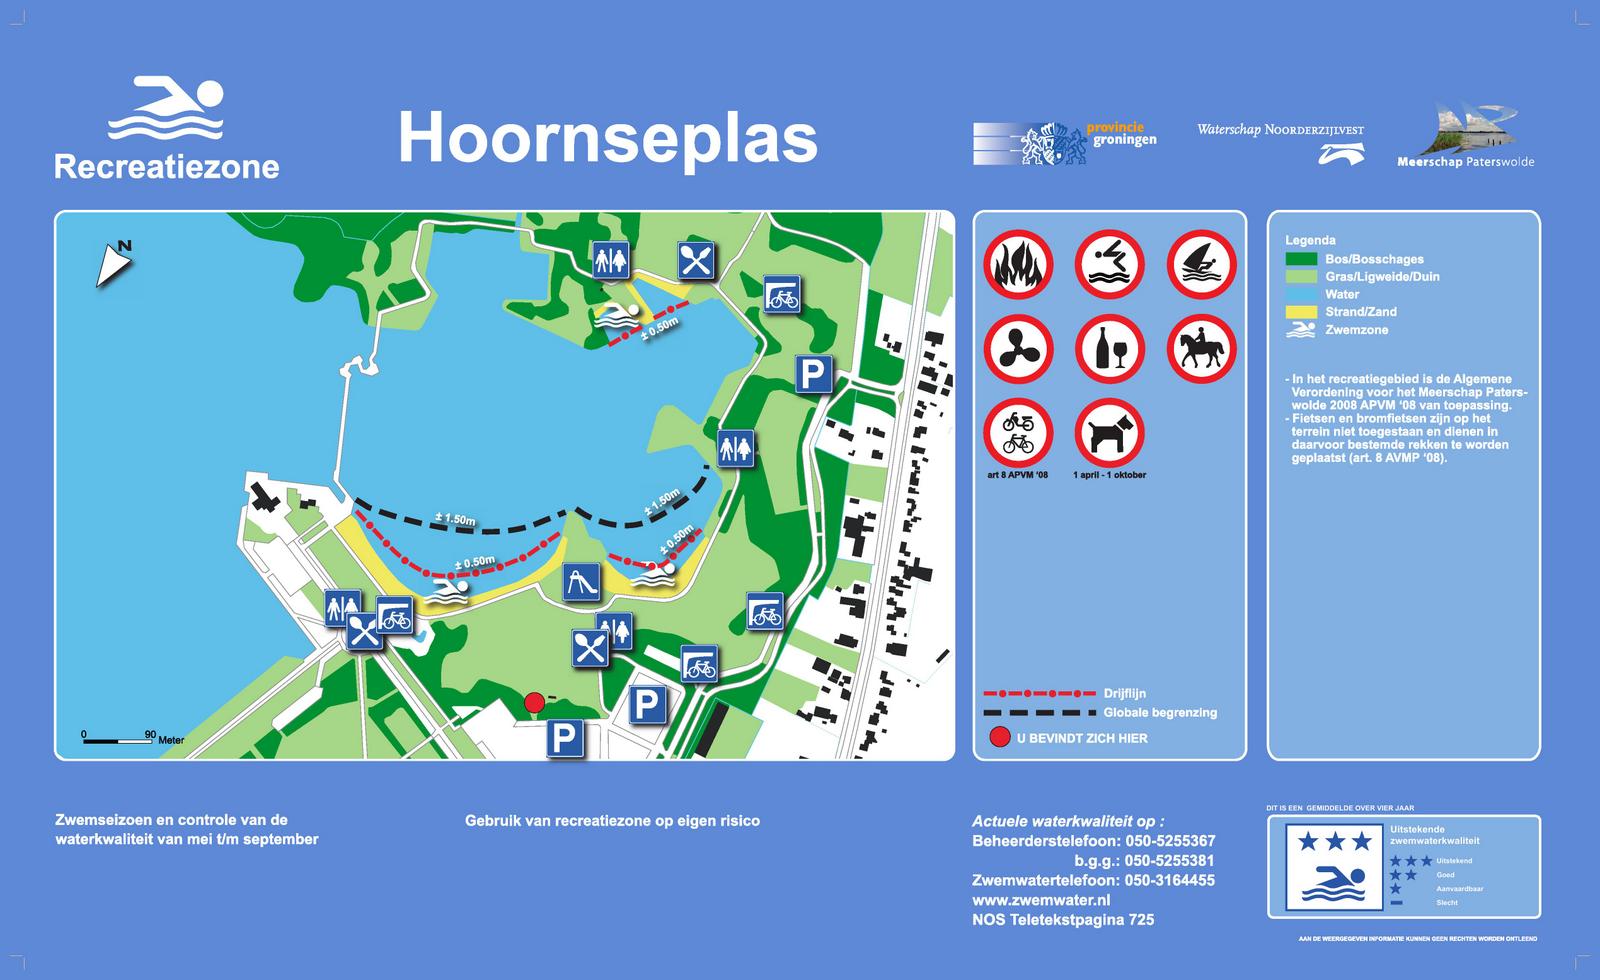 Het informatiebord bij zwemlocatie Hoornseplas, Groningen